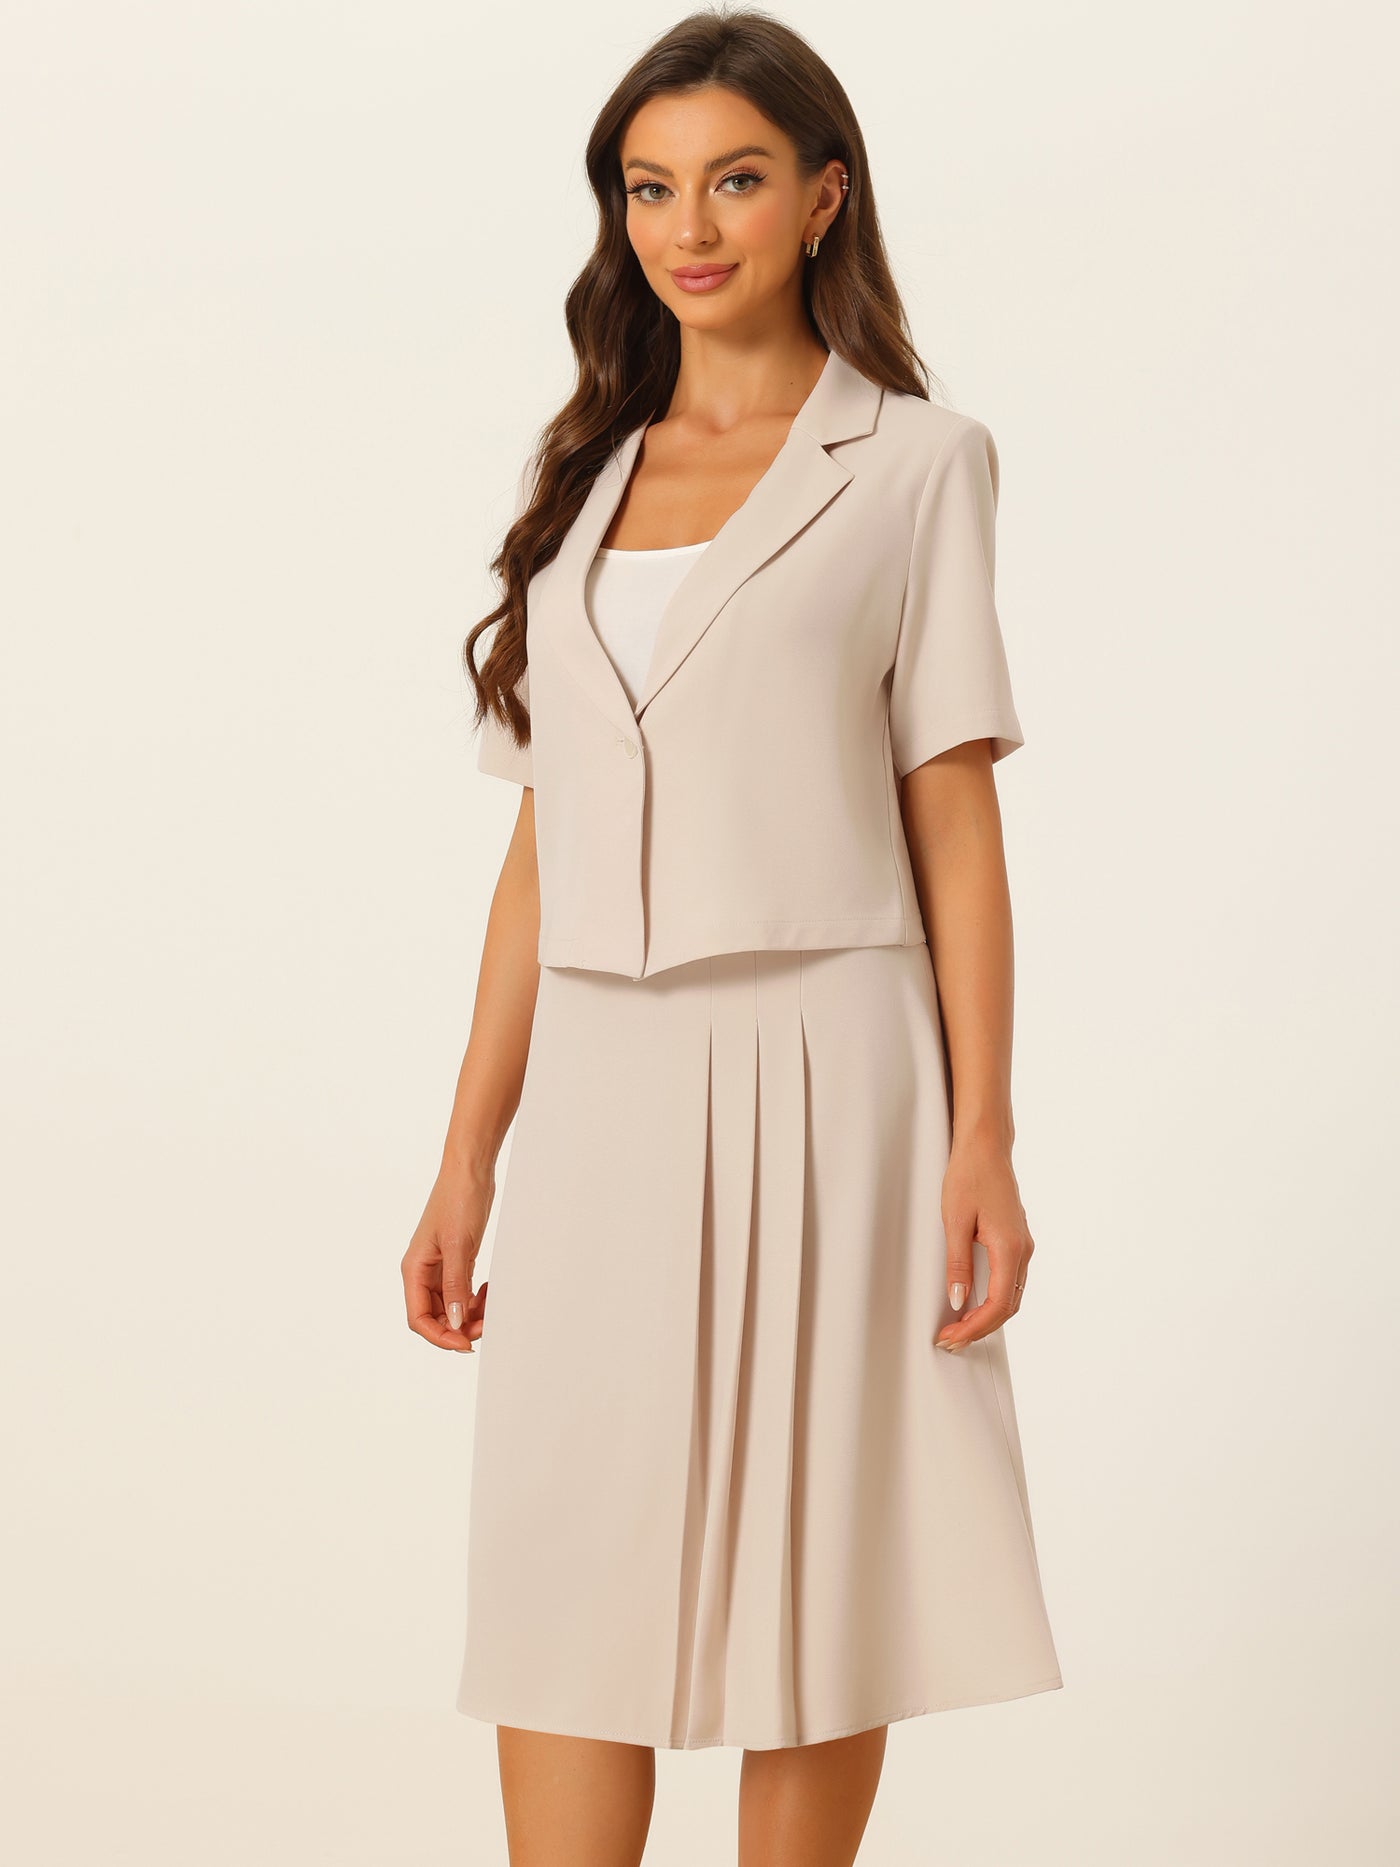 Allegra K Short Sleeve Blazer Skirt Suits for Women's Summer Dressy Business Casual Skirt Suit Set